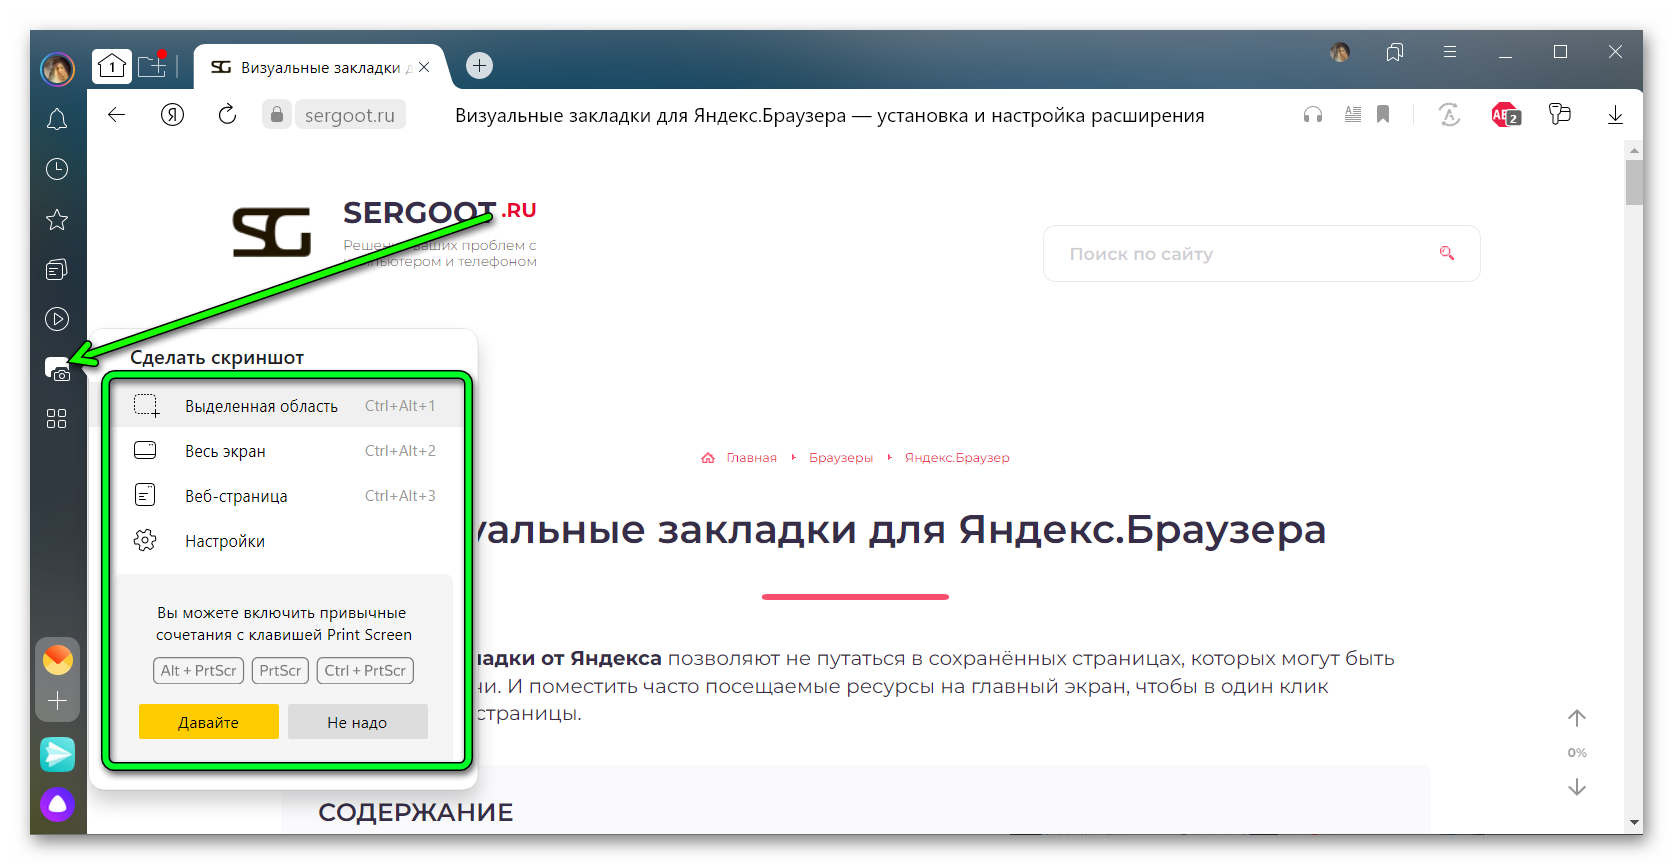 Встроеный скриншотер в Яндекс Браузере